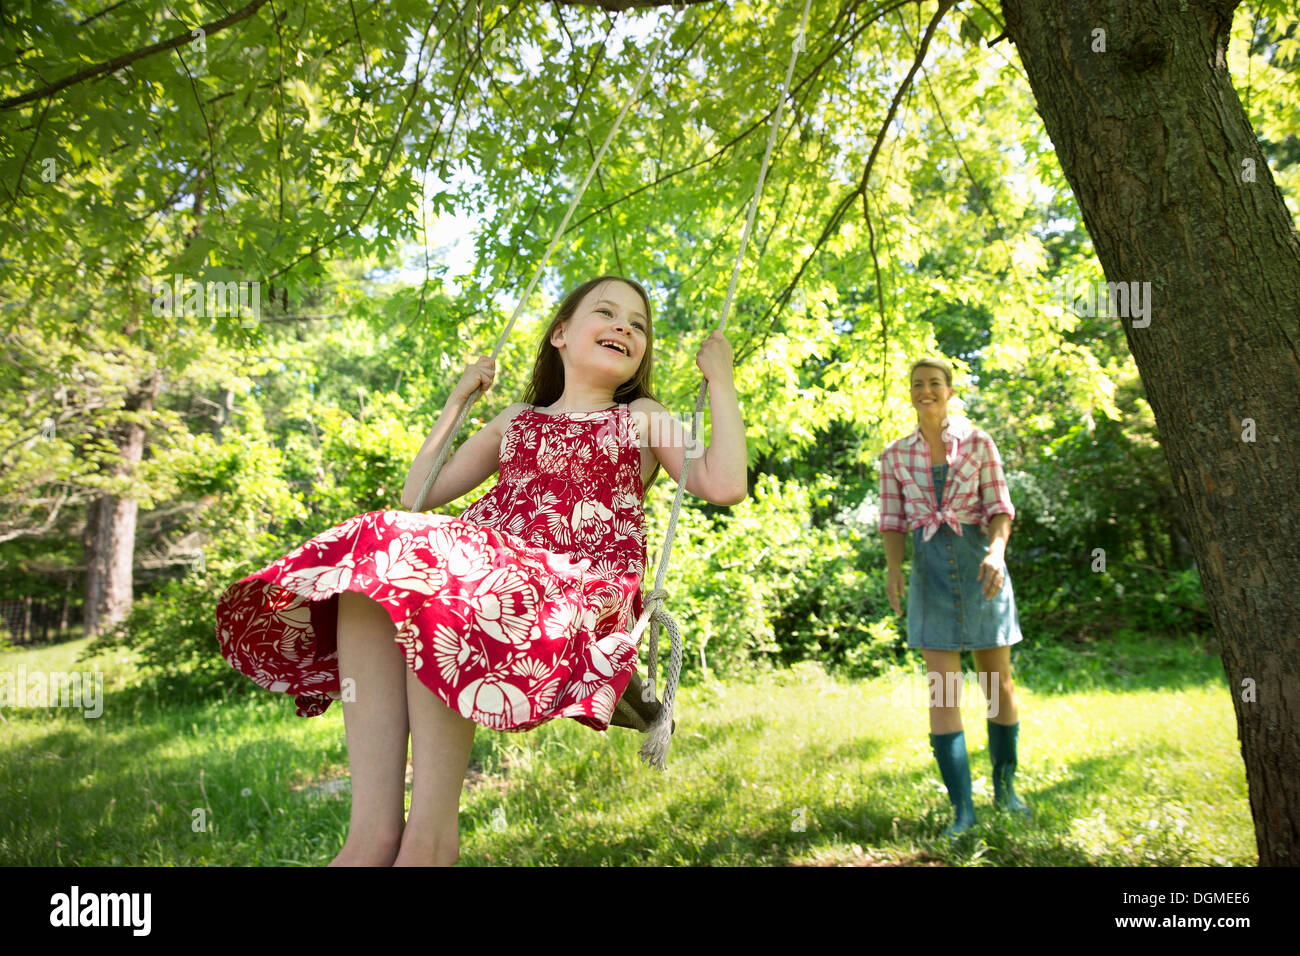 Sommer. Ein Mädchen in einem Sommerkleid auf einer Schaukel unter einem grünen Baum. Eine Frau, die hinter ihr stehen. Stockfoto